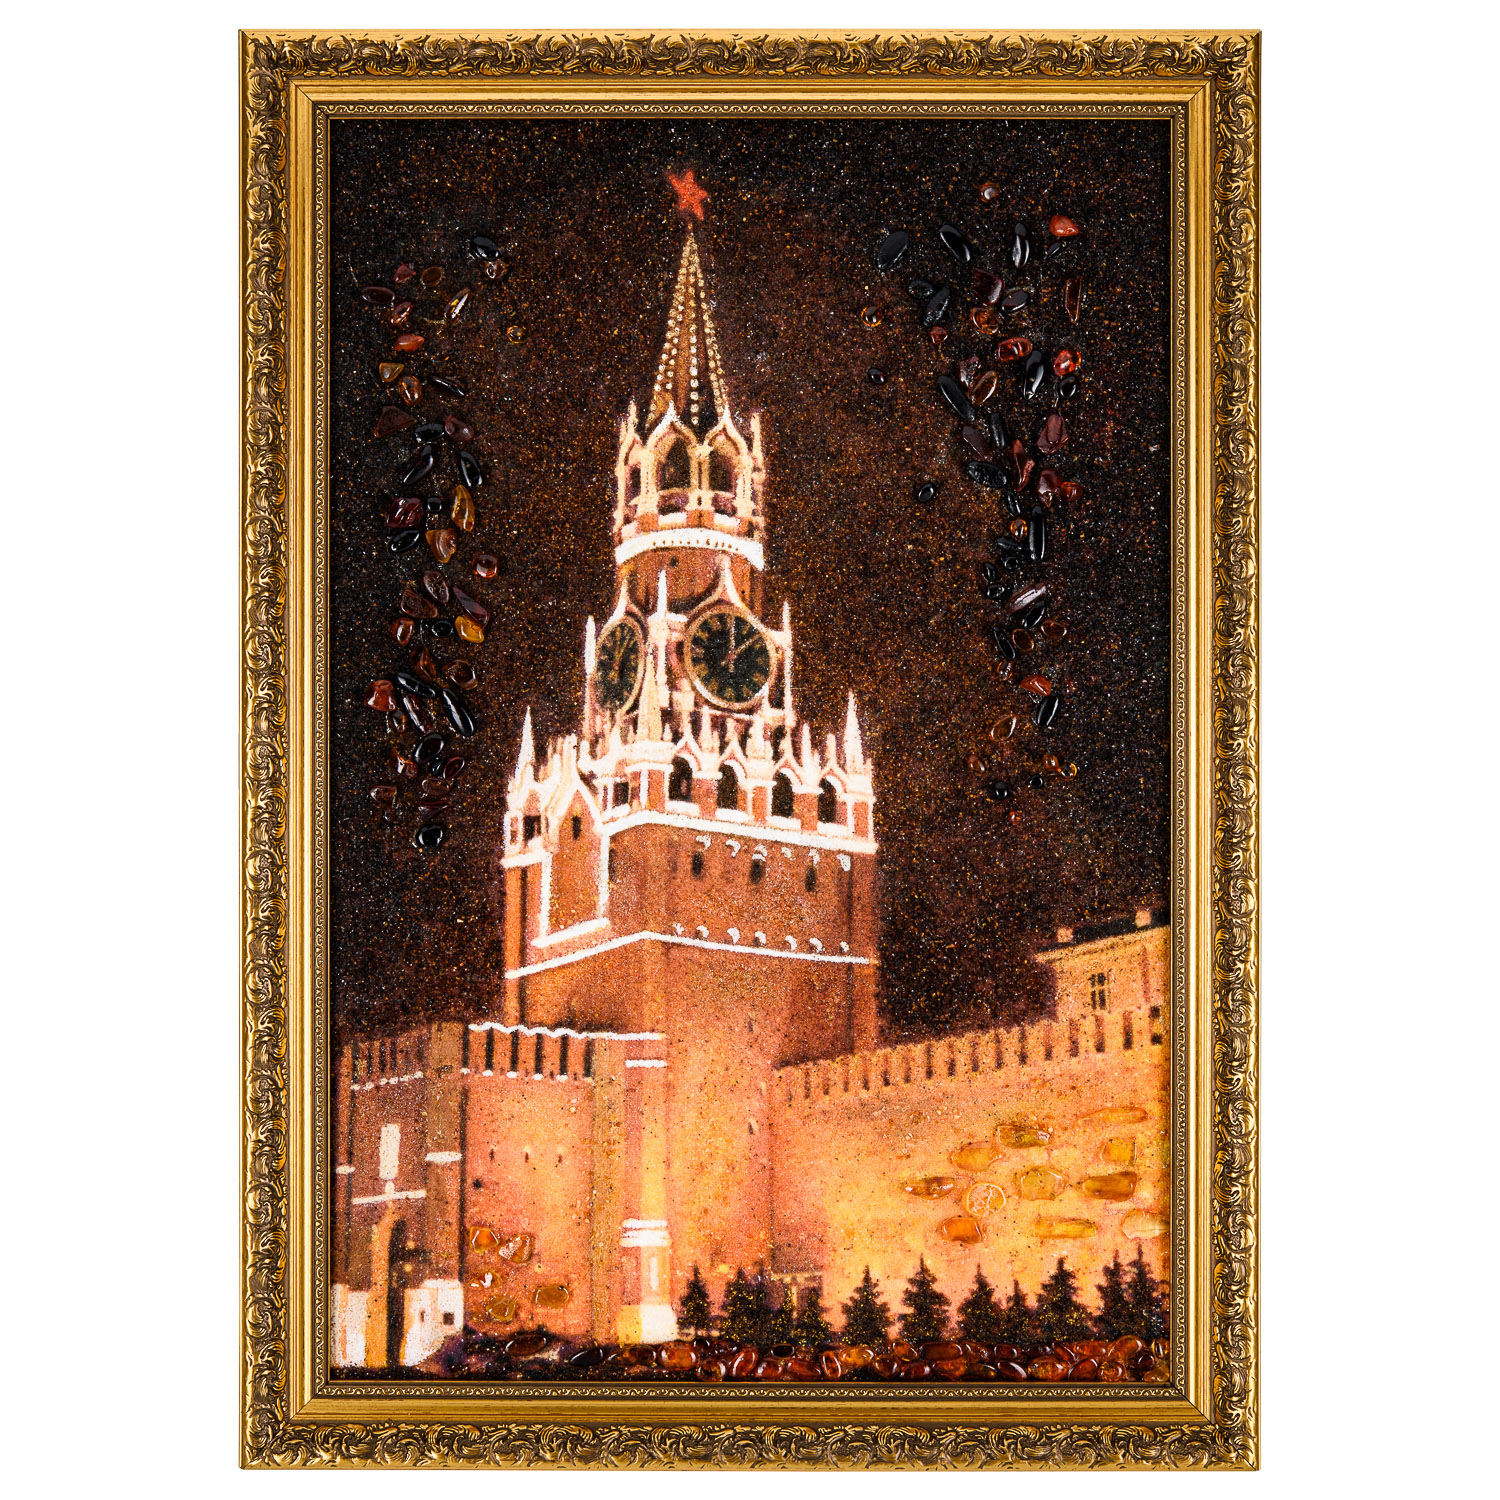 спасская башня кремля описание